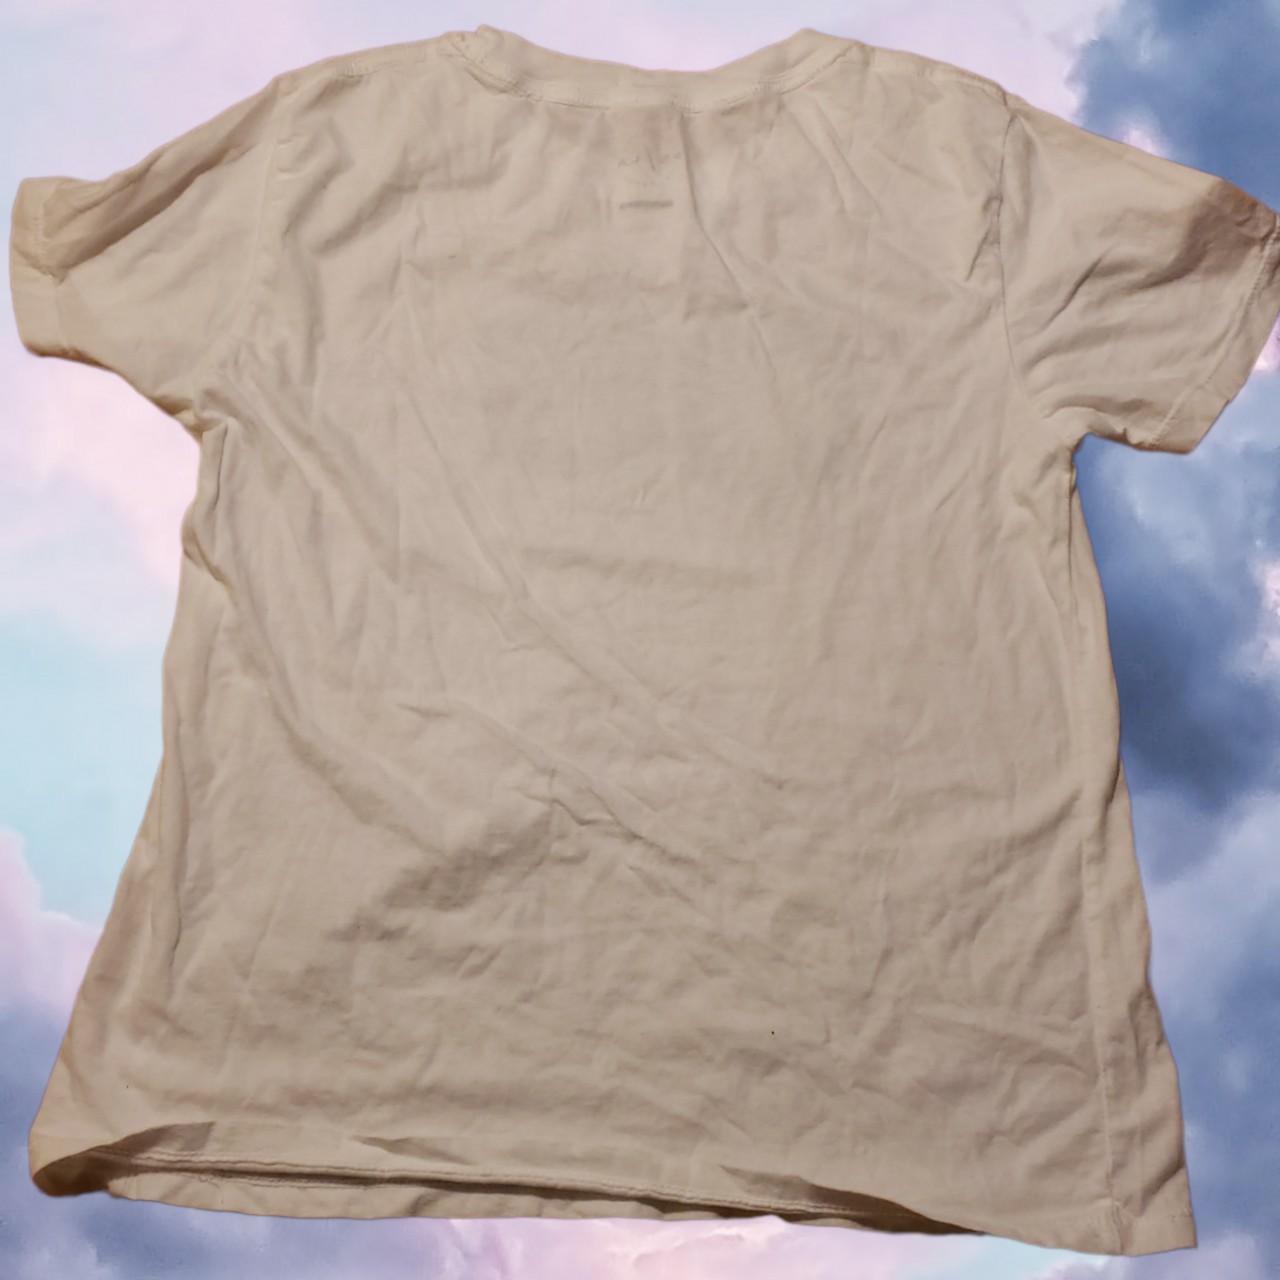 Product Image 2 - Cute trendy tarot card t-shirt.